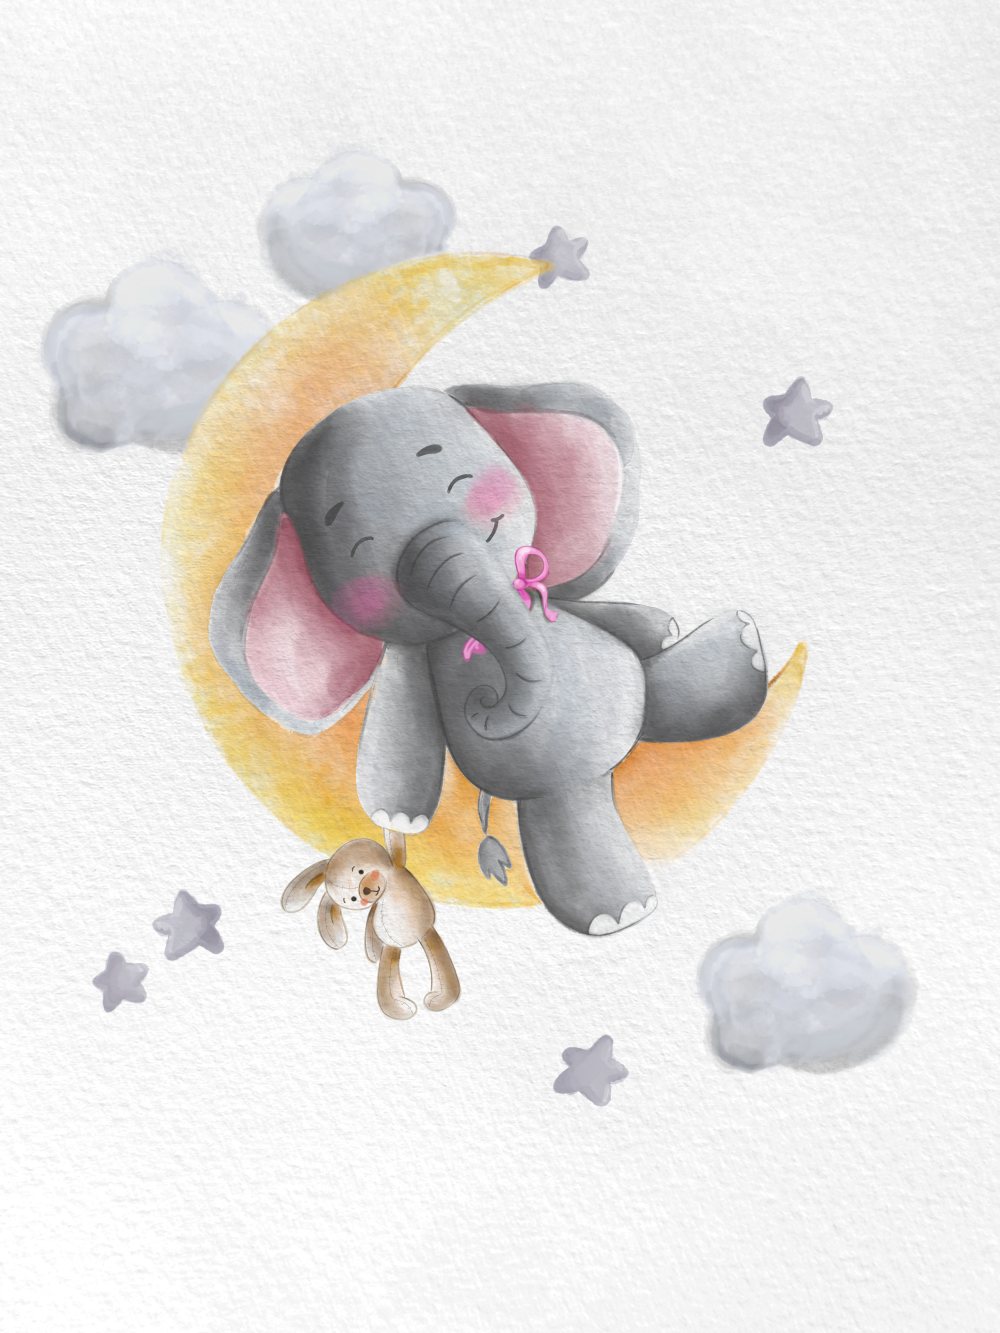 Originální dárek k narození dítěte, miminka, obraz slon na měsíci vytištěný na plakátu nebo obrazu na plátně | ZivotniOkamziky.cz